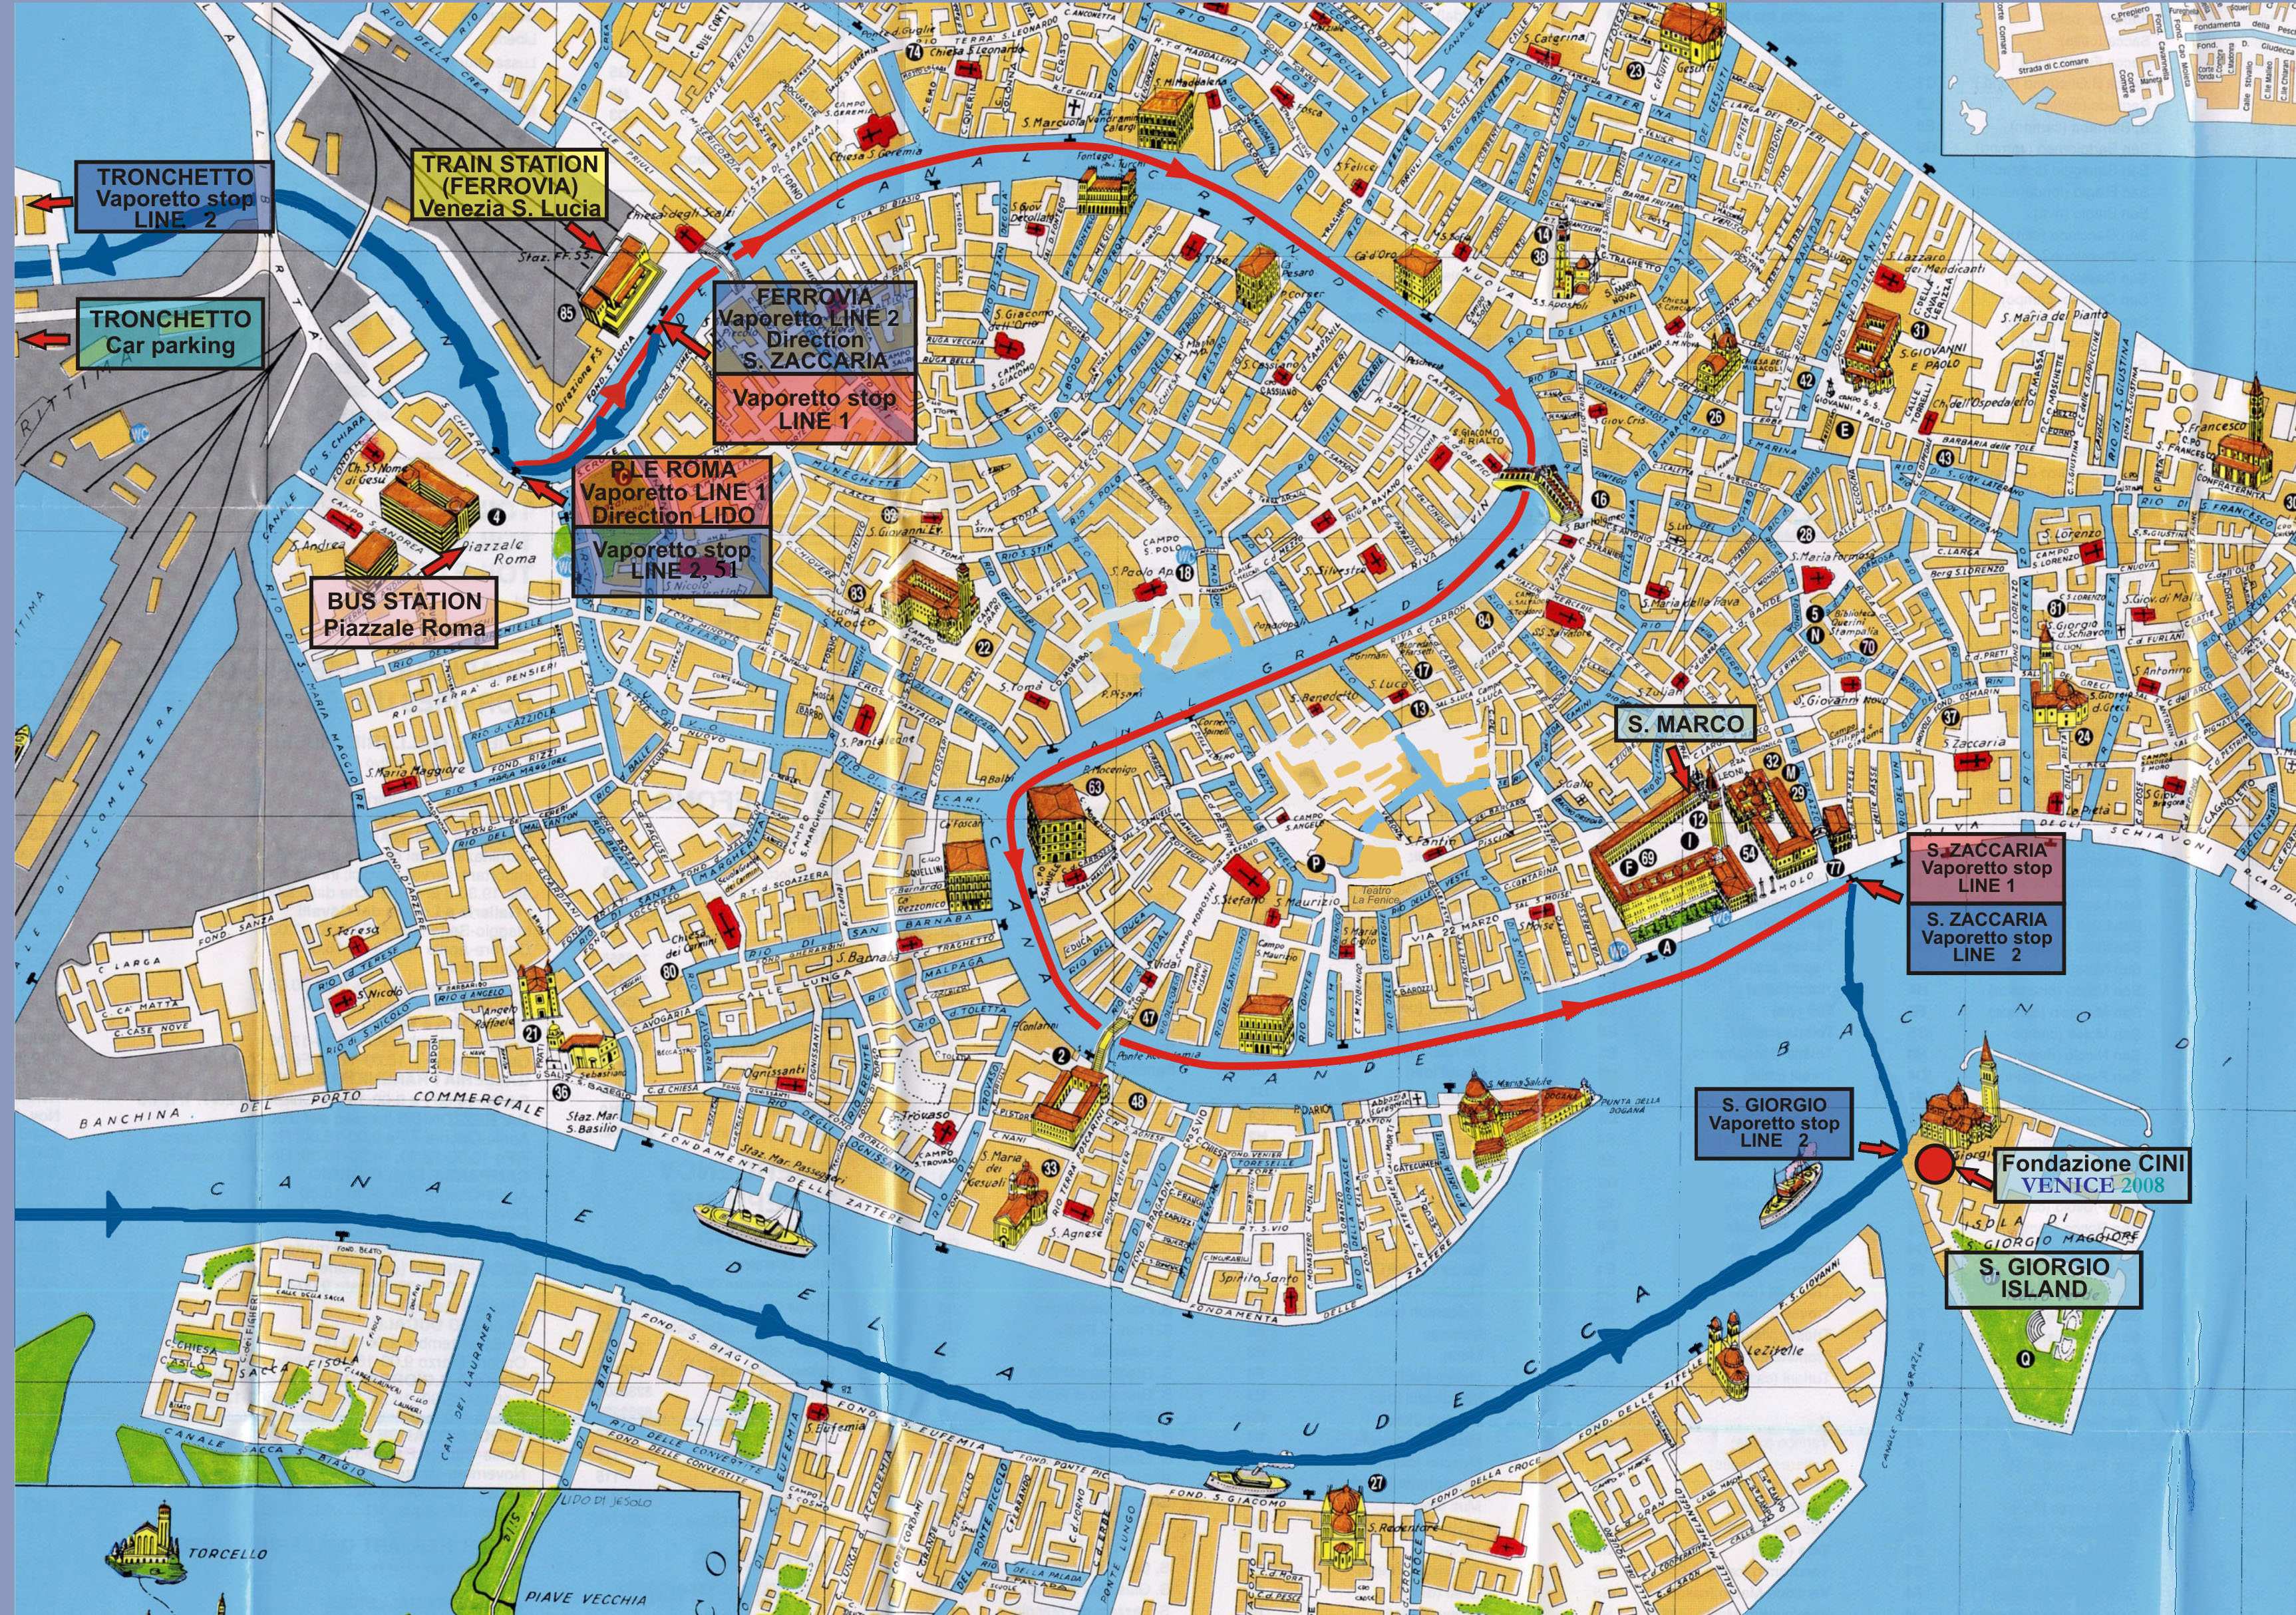 Stadtplan von Venedig | Detaillierte gedruckte Karten von Venedig